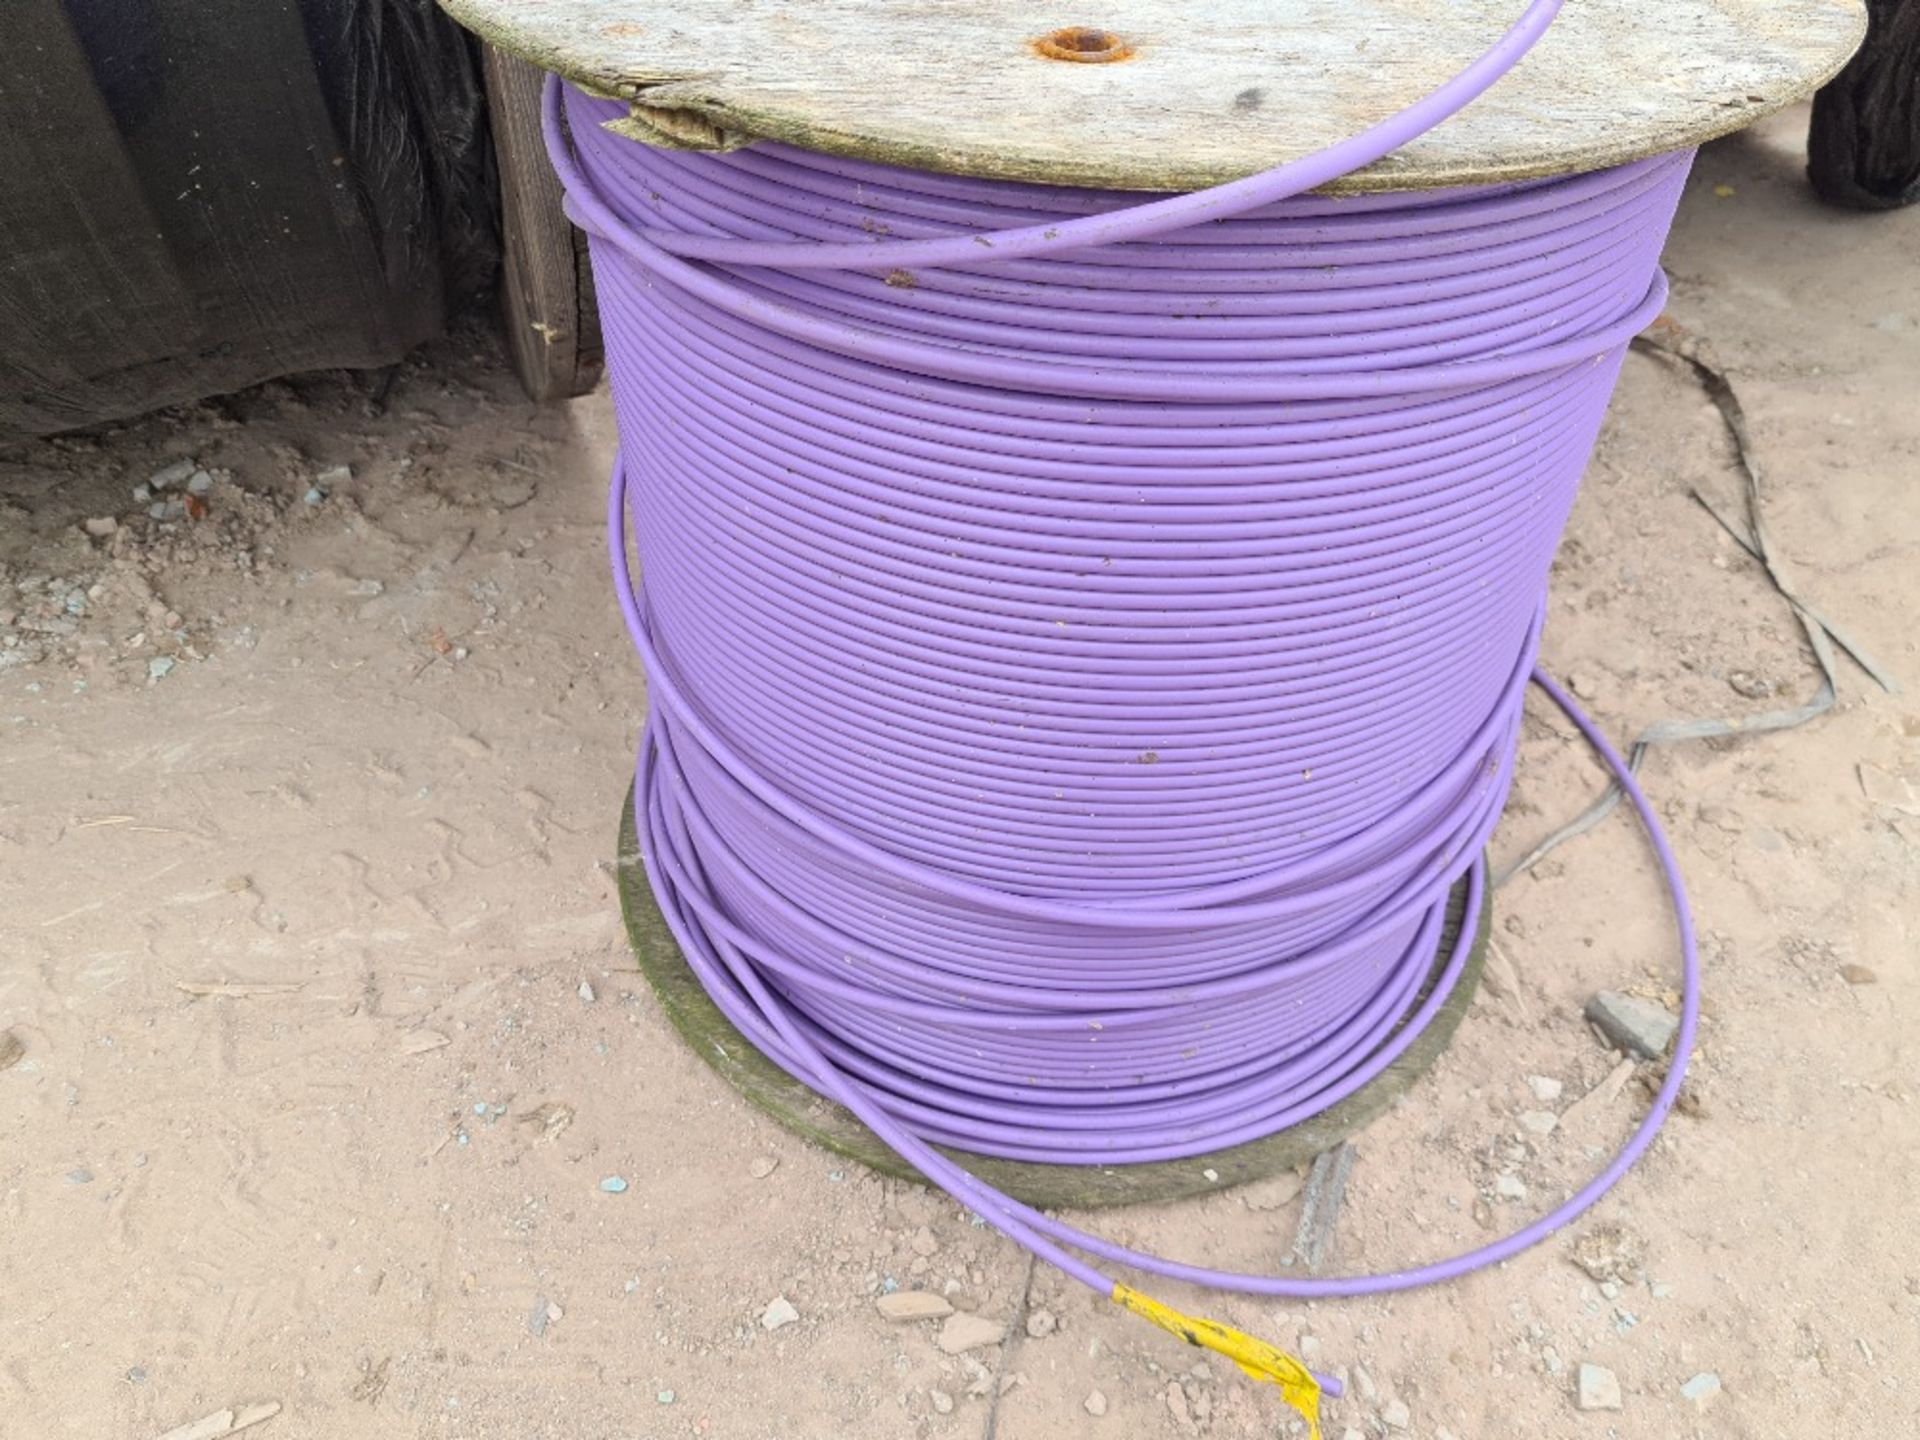 3 x cable drums - fibreoptic conduit (purple).